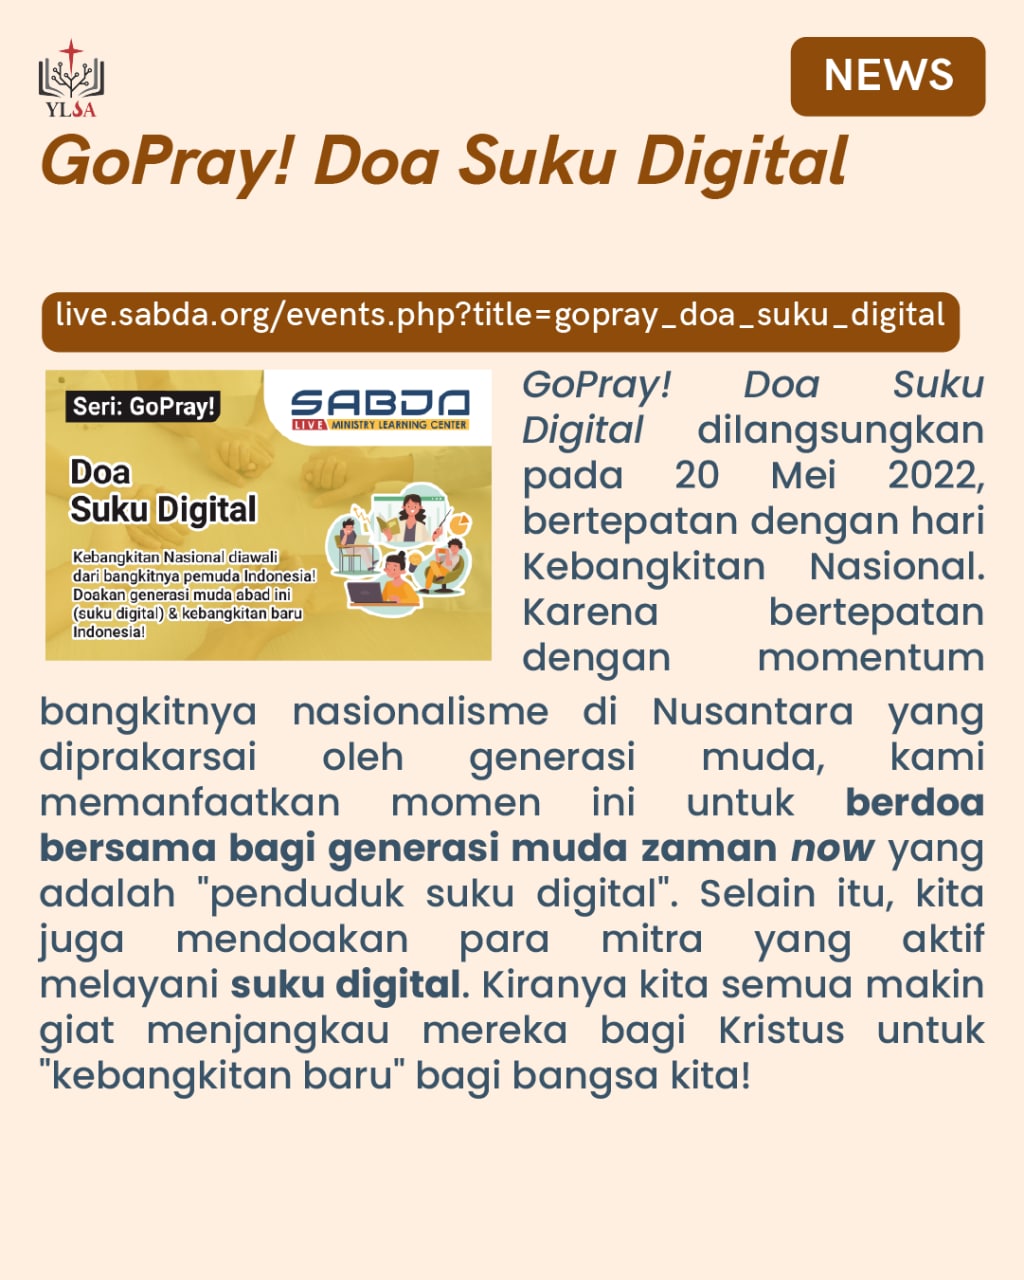 GoPray! "Doa Suku Digital" mengajak kita untuk berdoa bagi "penduduk suku digital".